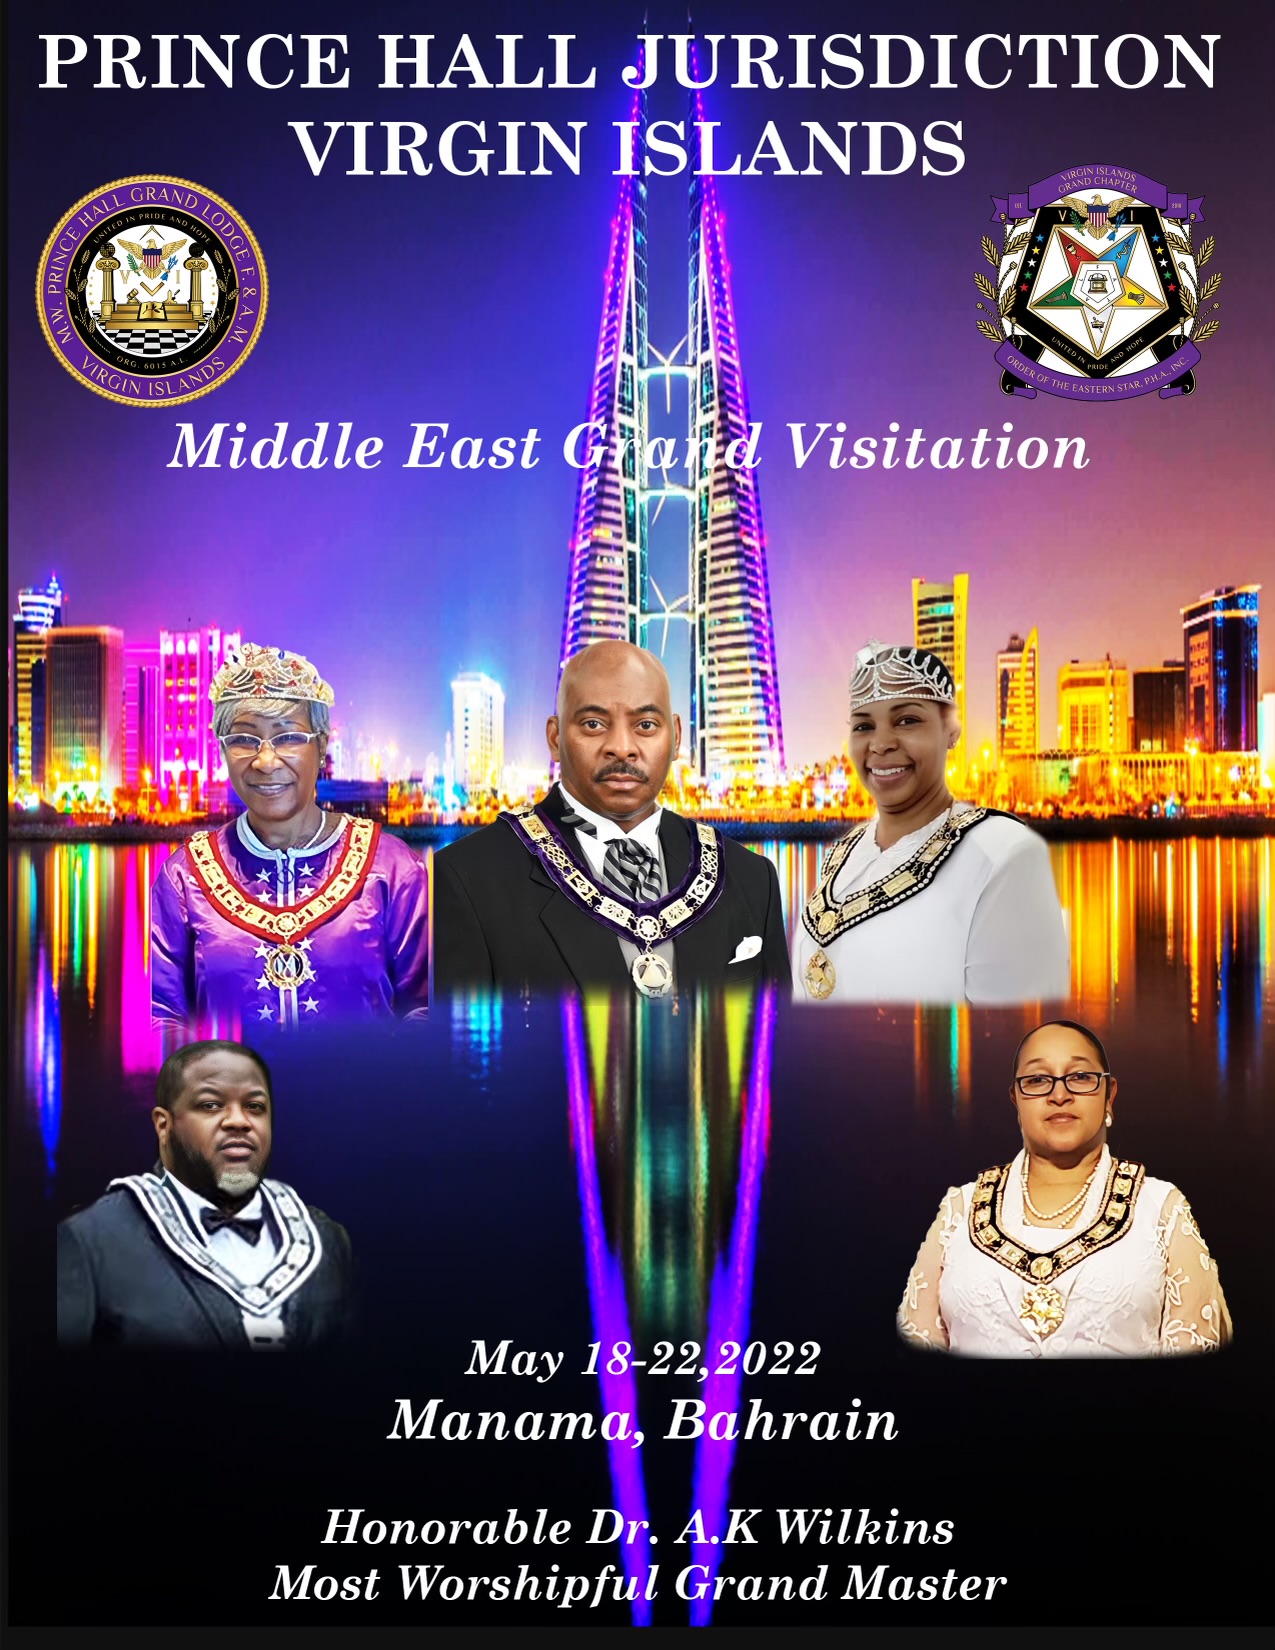 Middle East Grand Visitation